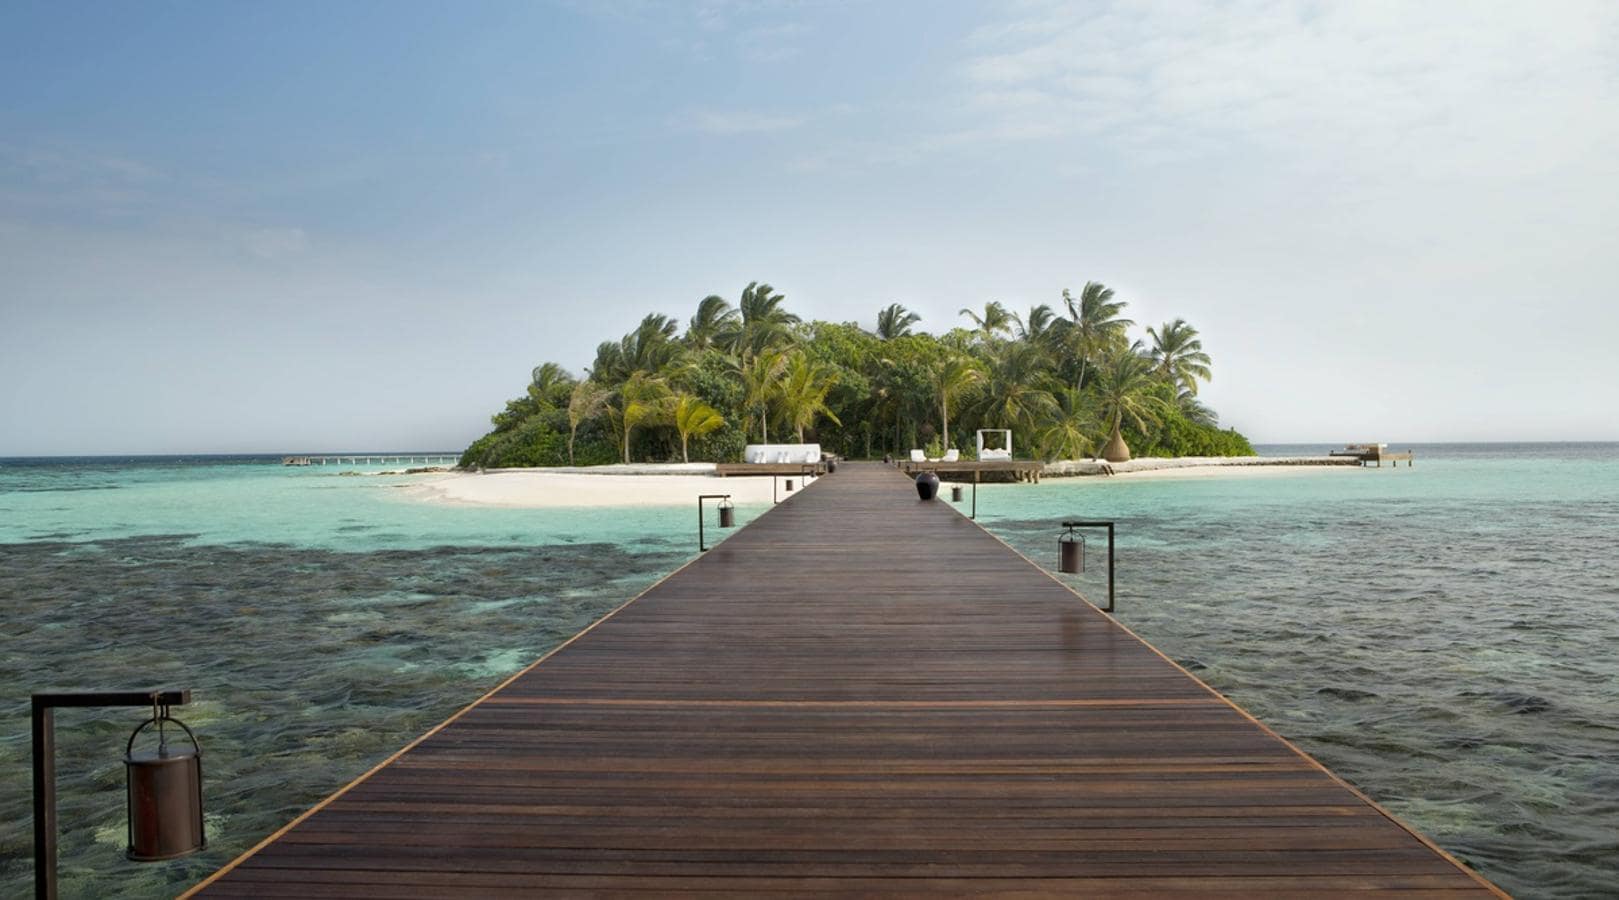 La isla de Maldivas de 40.000 dólares la noche. Su precio de 40.000 euros la noche ya vaticina que es un templo a la exclusividad, tanto es así, que aunque las cifras sean bastante elevadas, cuenta con lista de espera para gozar de unas vacaciones en su interior.